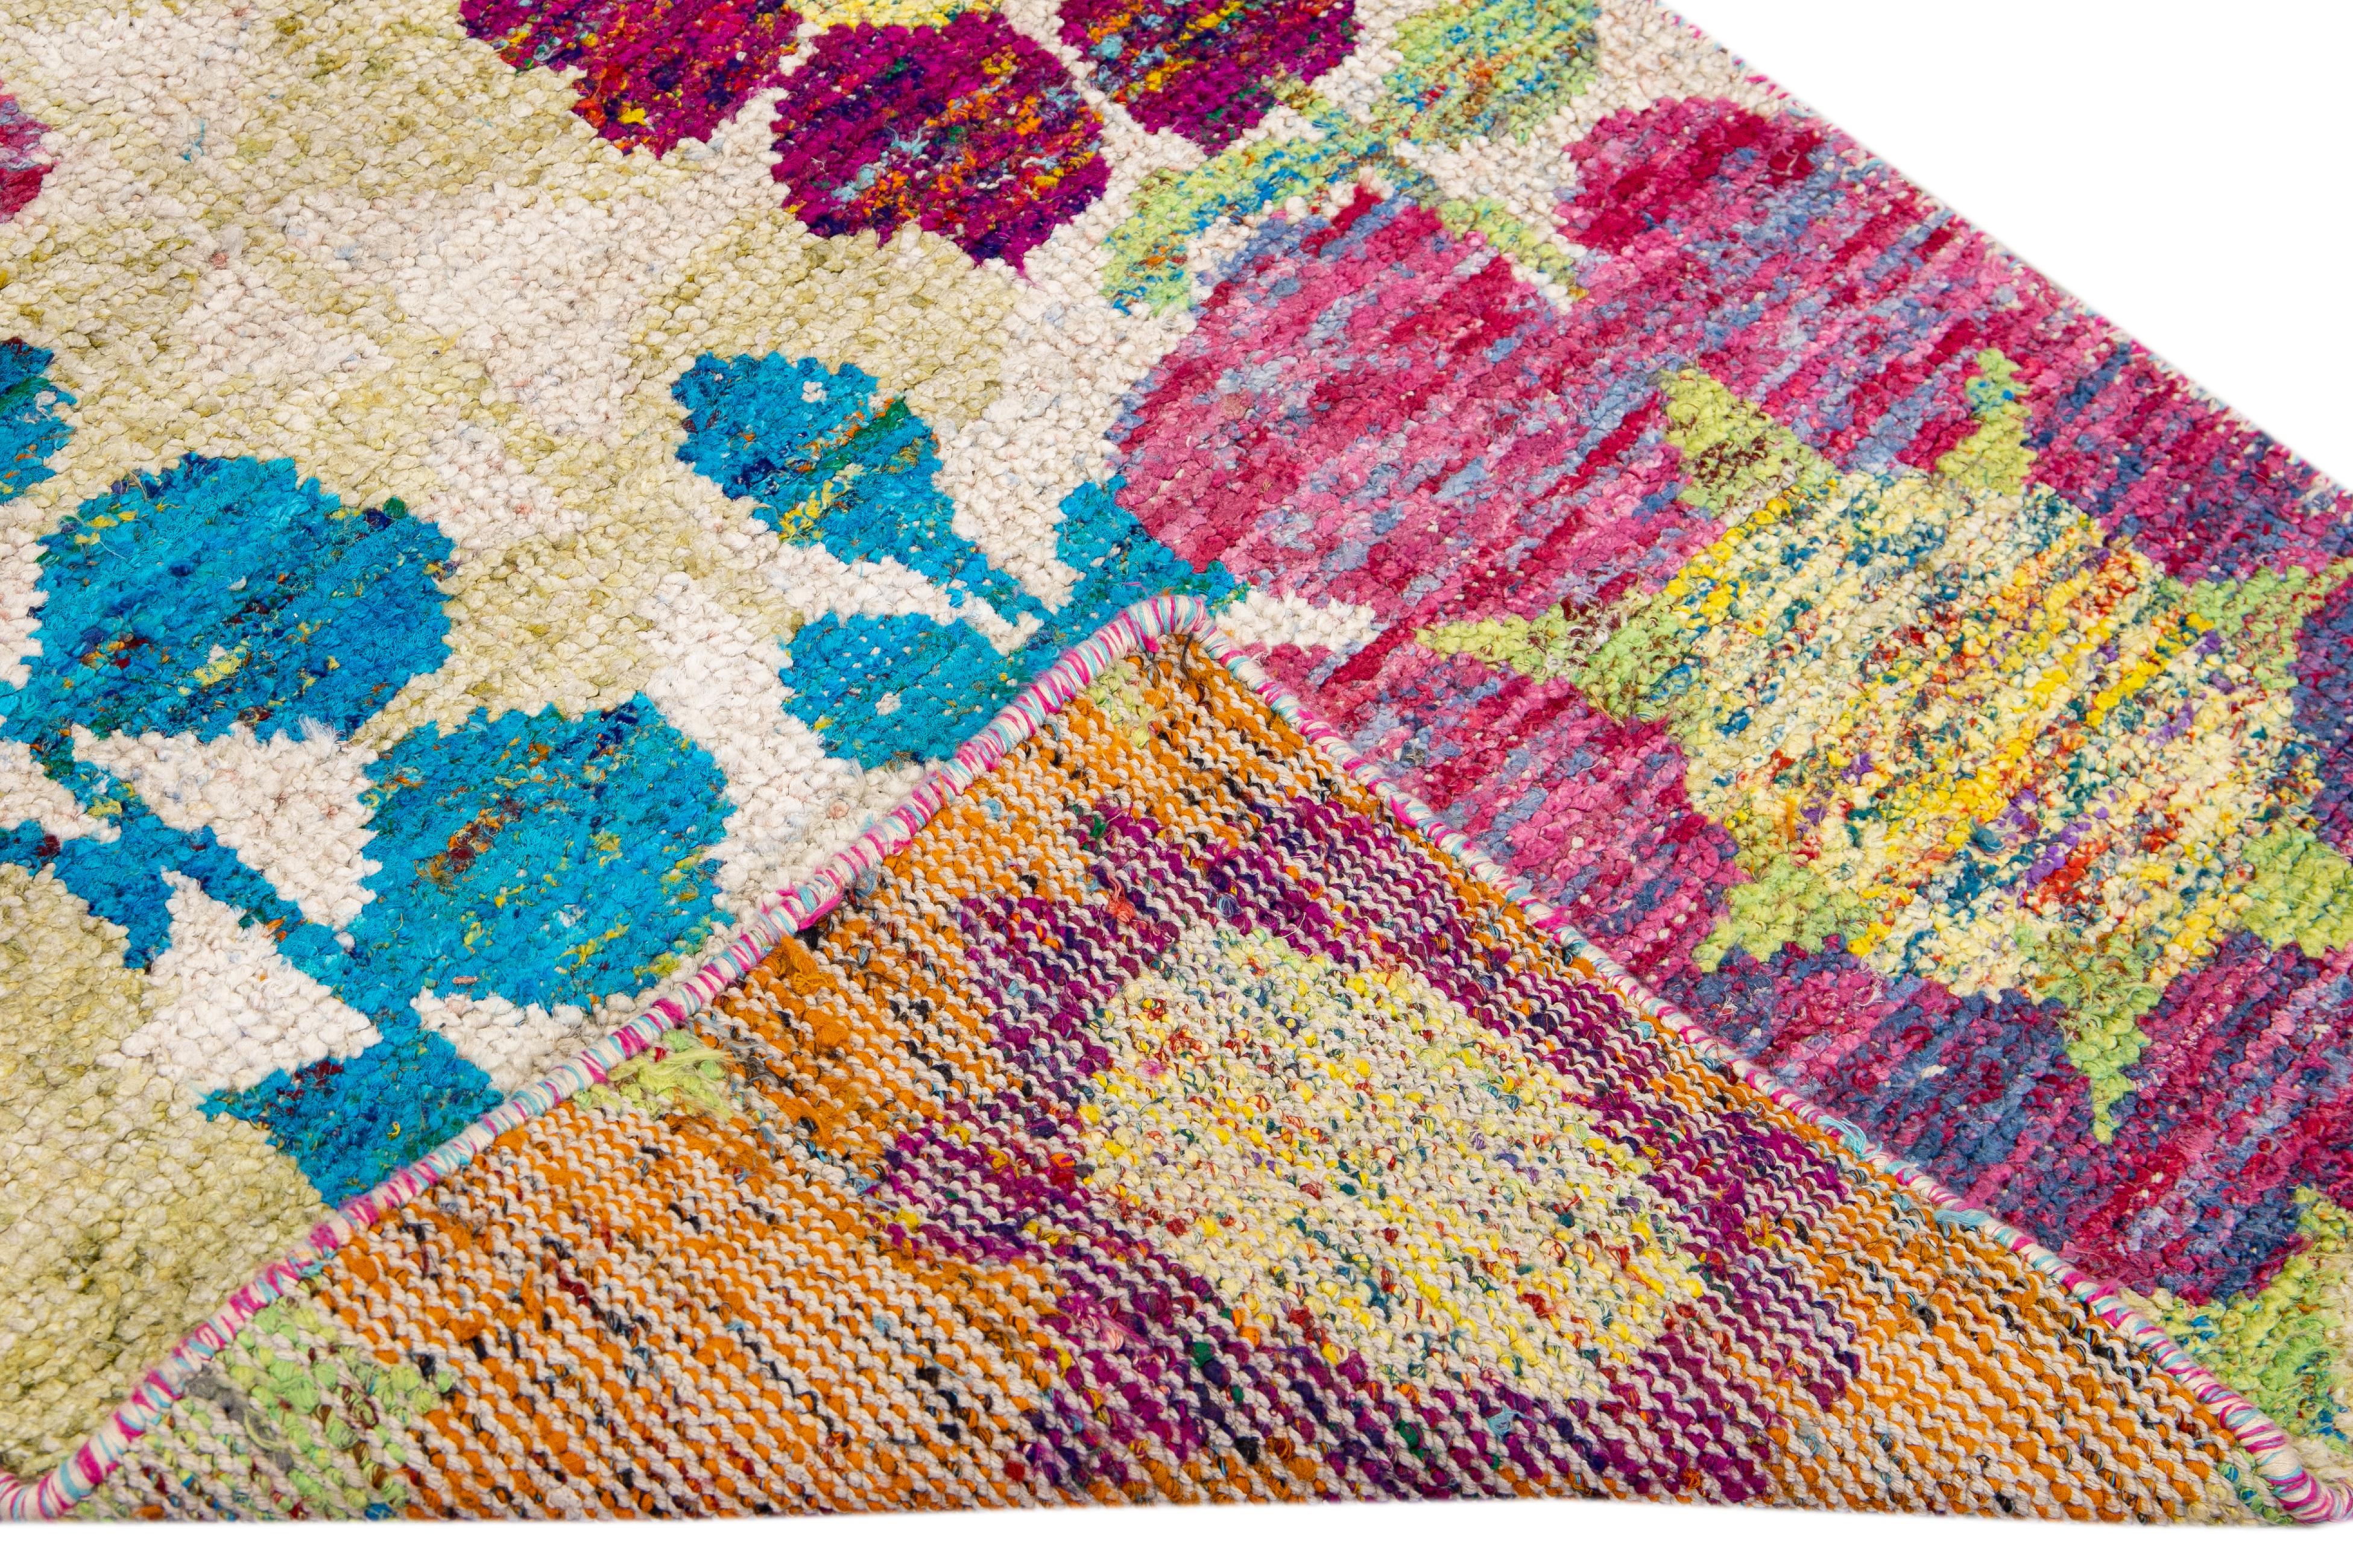 Schöner moderner indischer handgeknüpfter Wollläufer mit beigem Feld. Dieser moderne Teppich hat orange, gelbe, grüne und blaue Akzente und ein wunderschönes geometrisches, florales Muster.

Dieser Teppich misst: 3'1